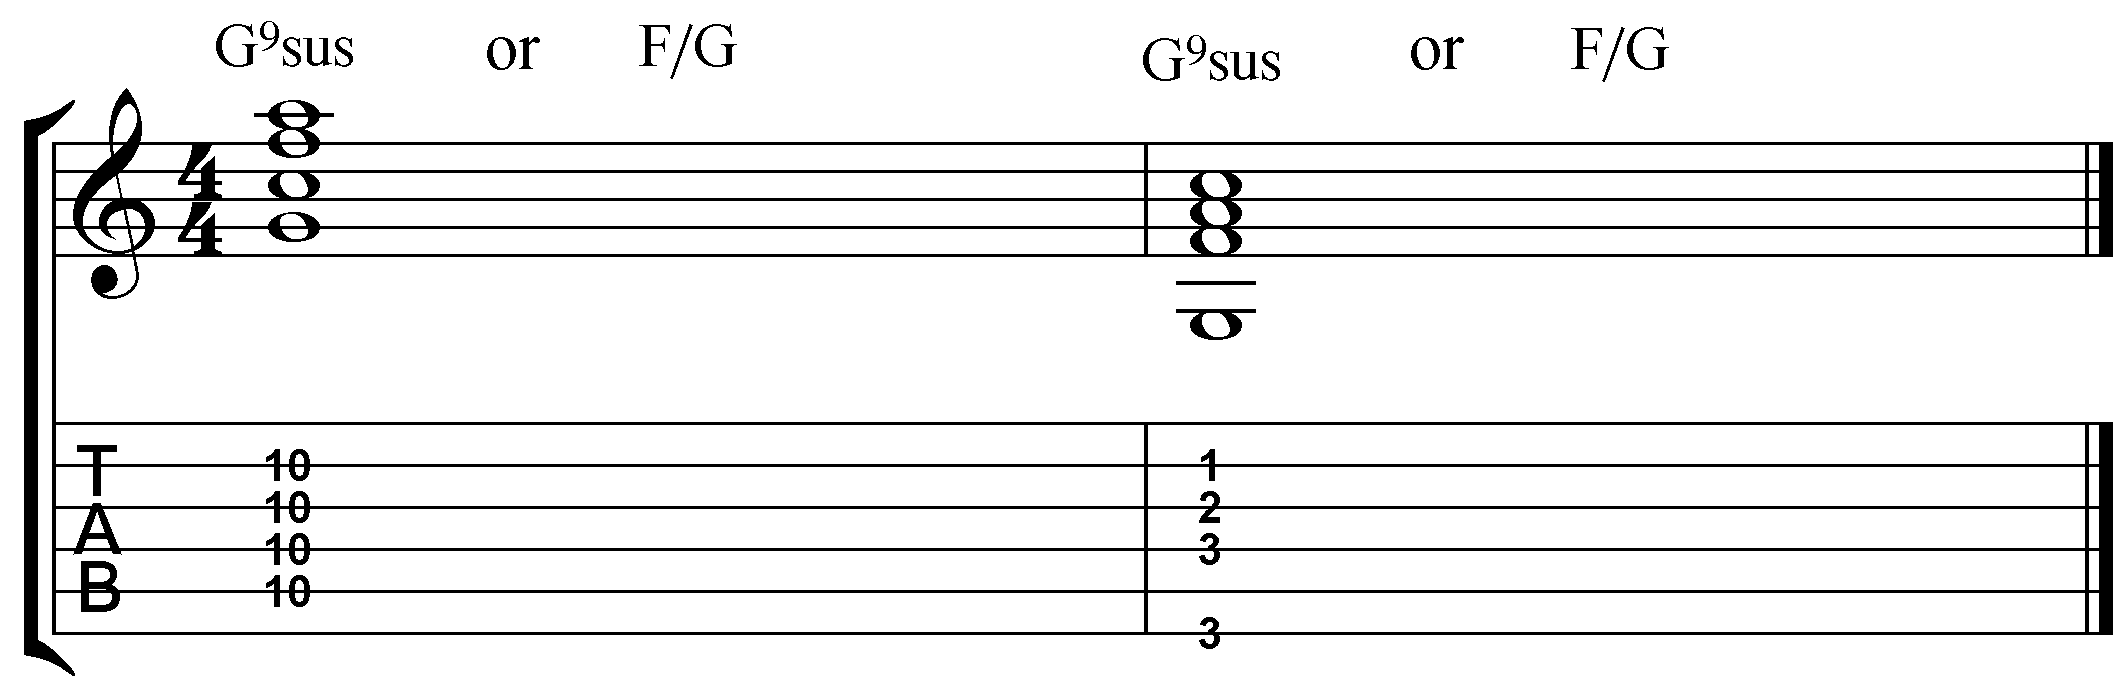 g9sus guitar chord.